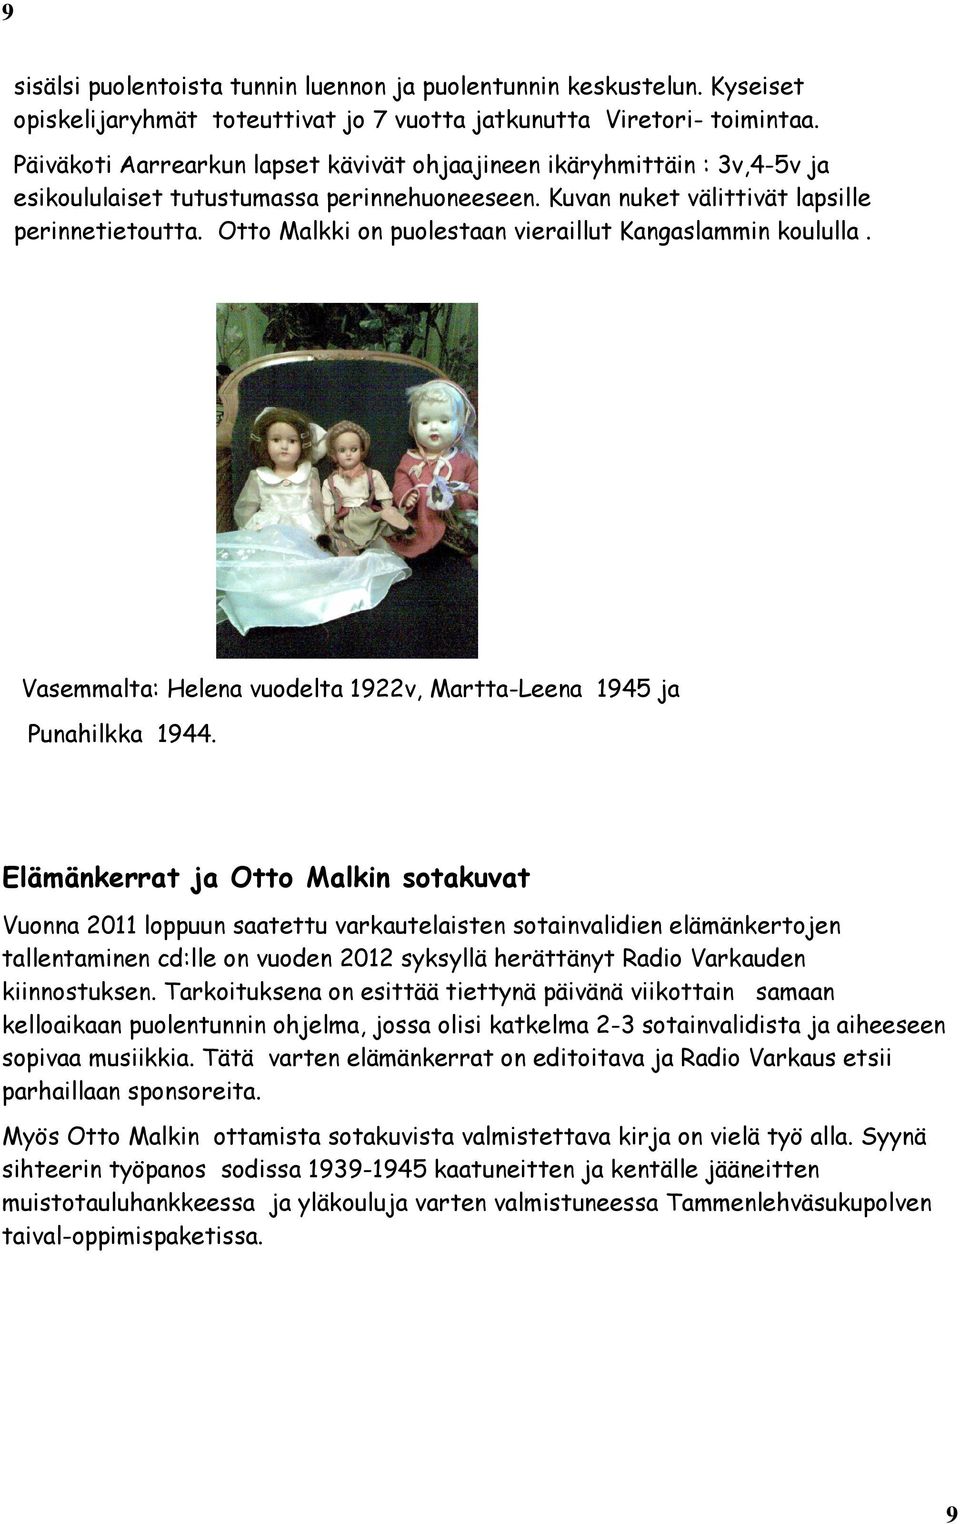 Otto Malkki on puolestaan vieraillut Kangaslammin koululla. Vasemmalta: Helena vuodelta 1922v, Martta-Leena 1945 ja Punahilkka 1944.